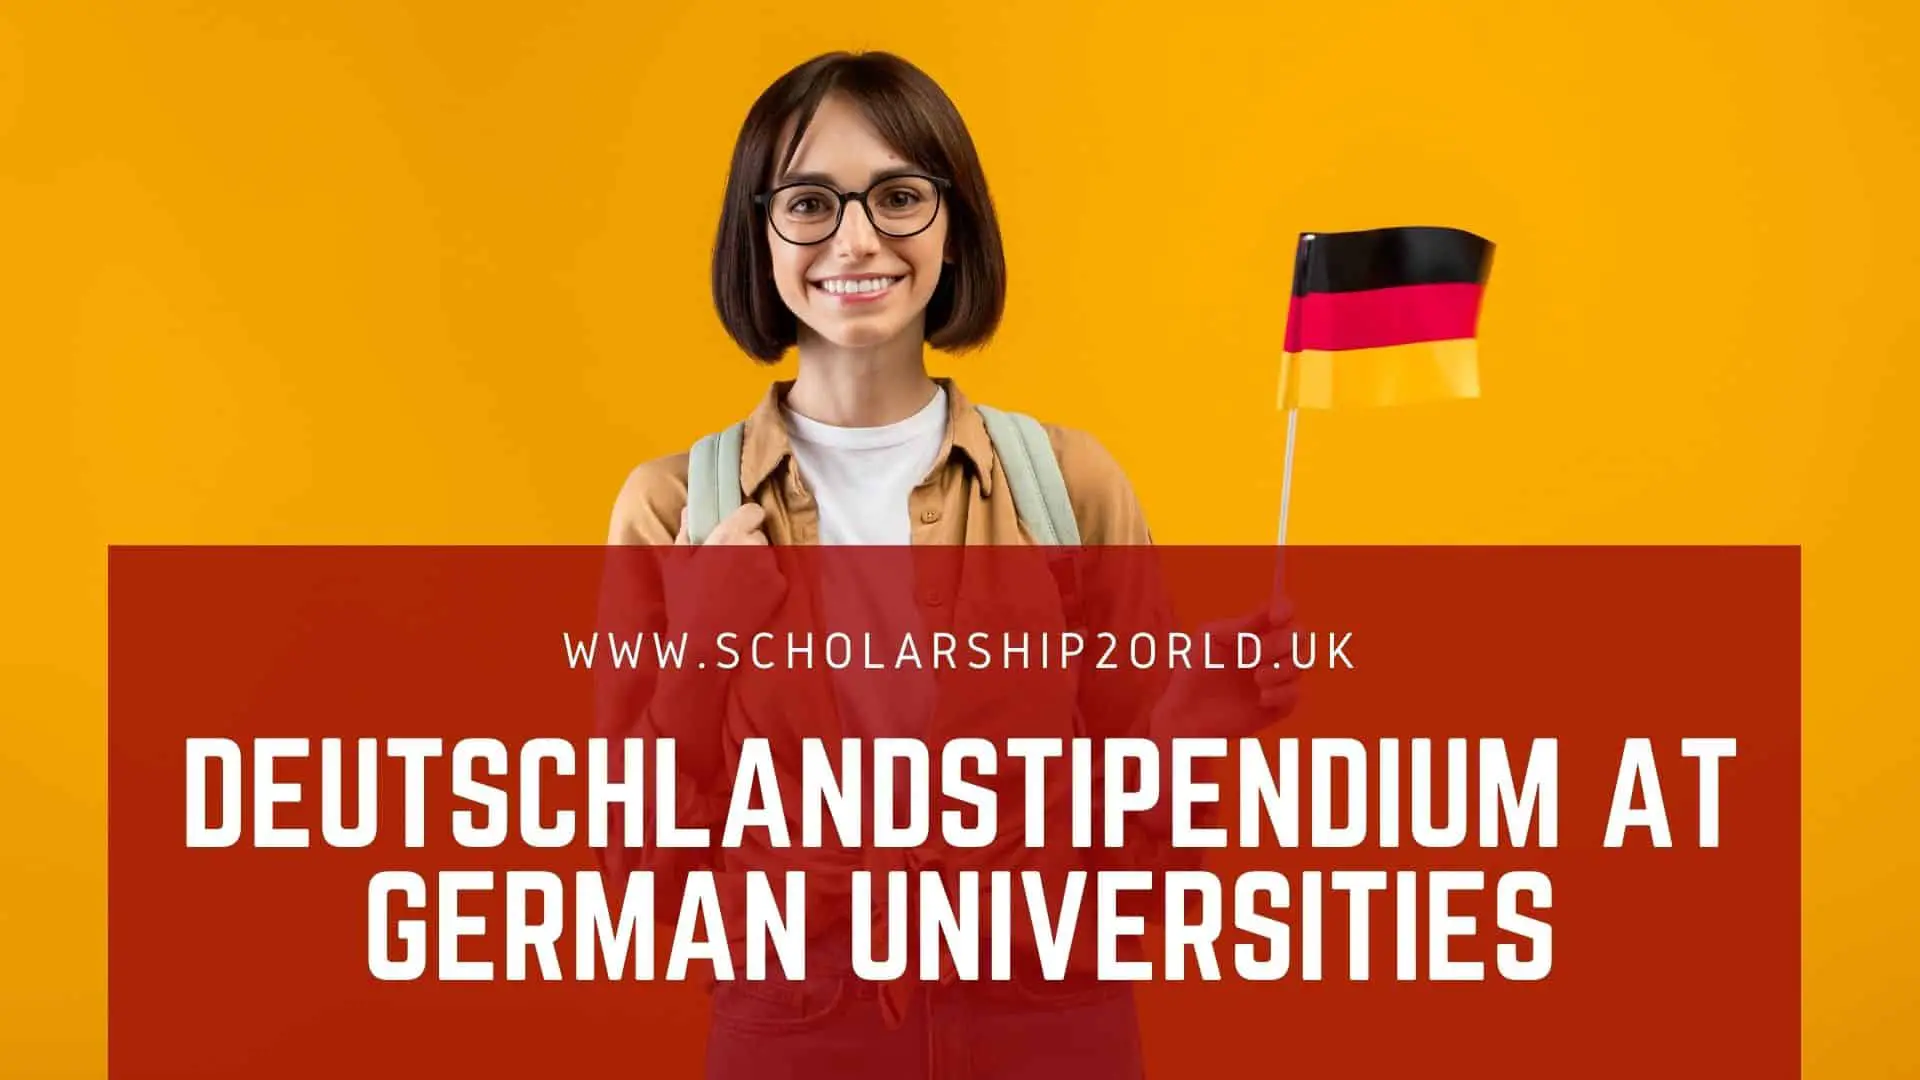 The Deutschlandstipendium at German Universities